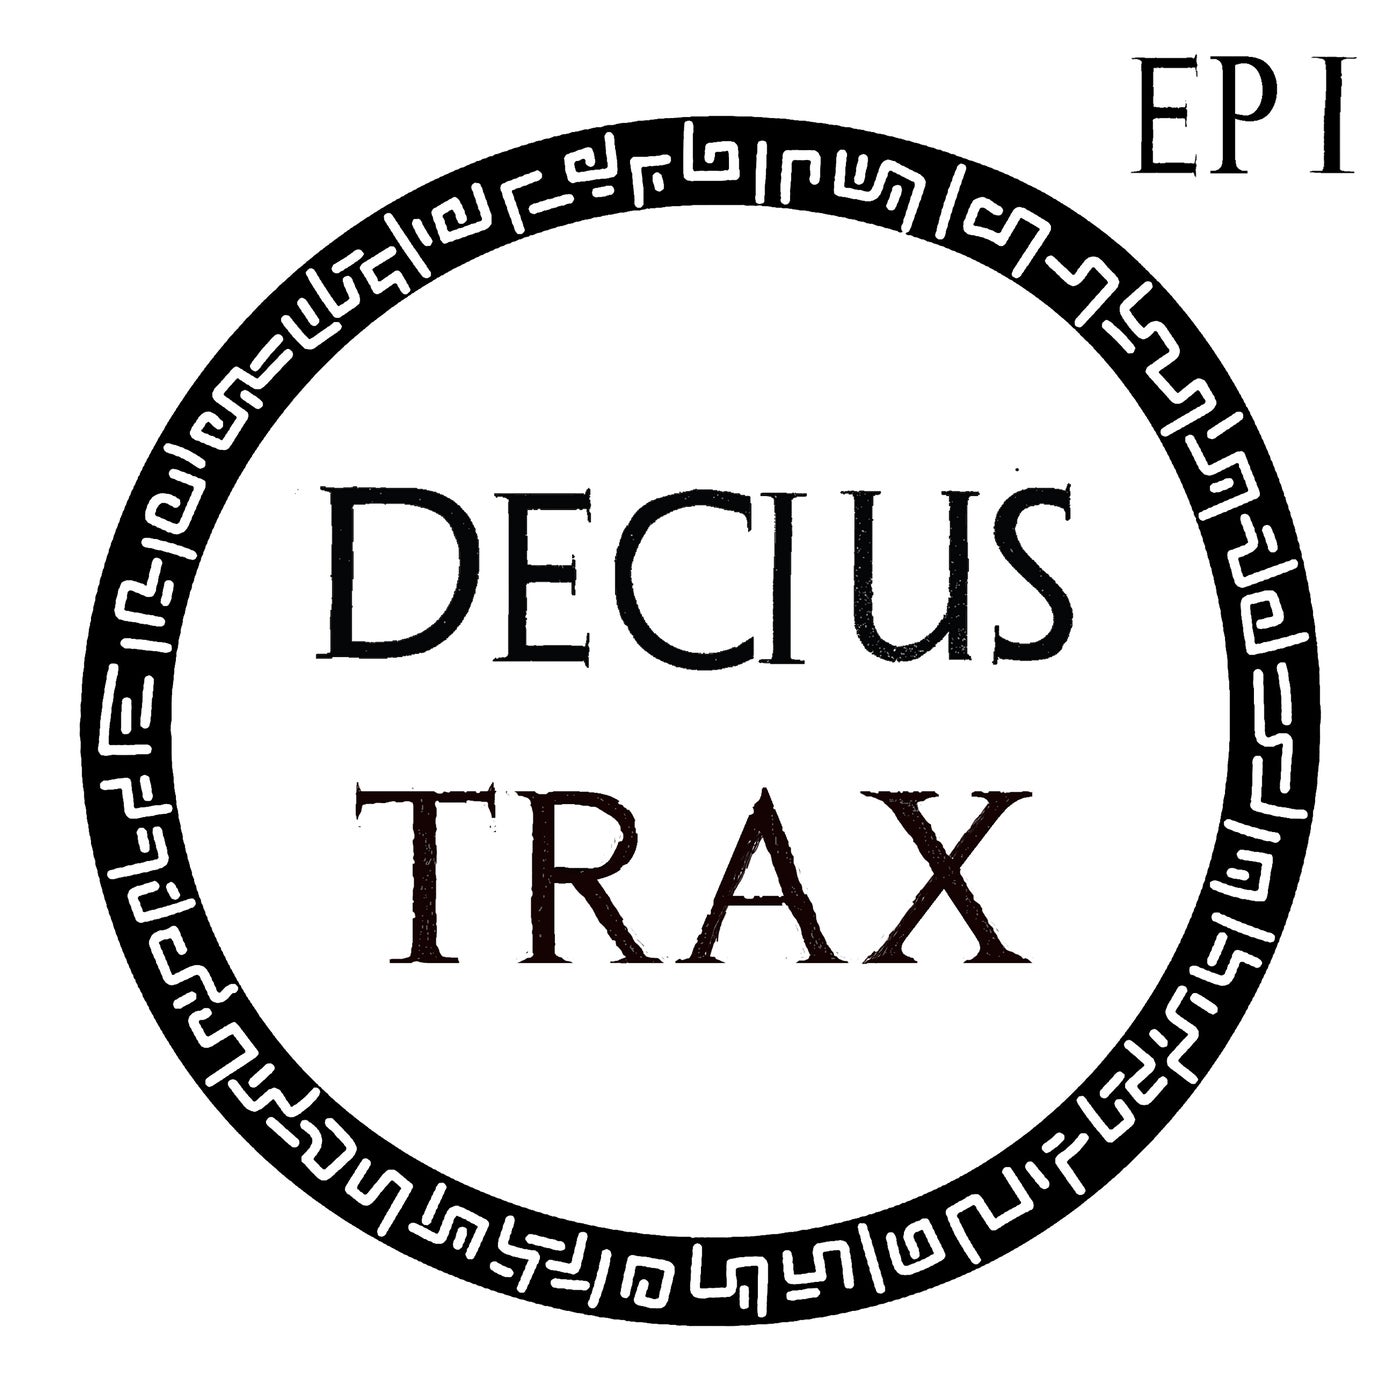 Decius Trax EP I